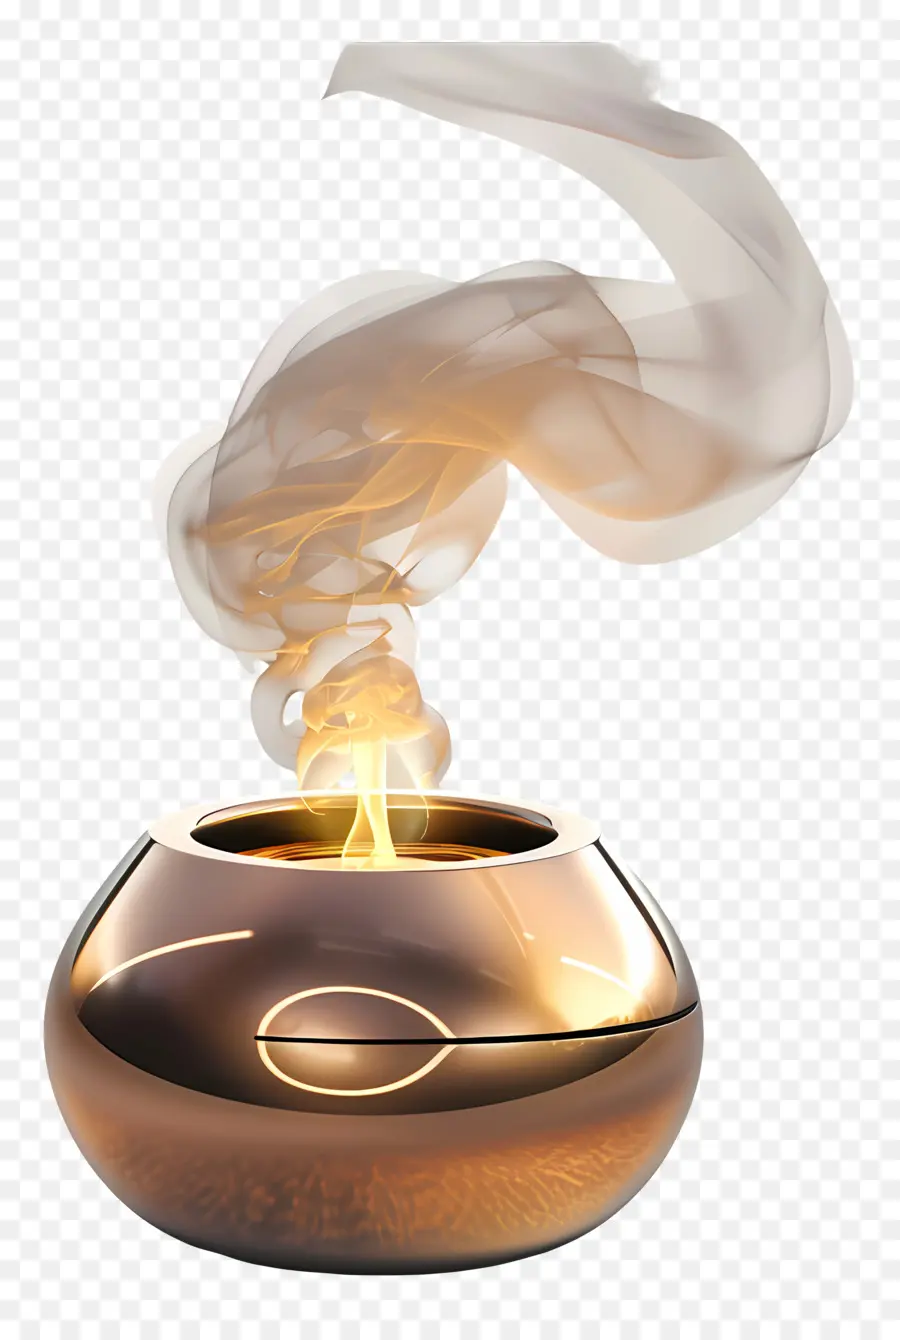 Burner Burner Burner COCK COUCINA UTENSILE UTENSIONE CUSTICHE - Vaso di rame con fumo su sfondo scuro